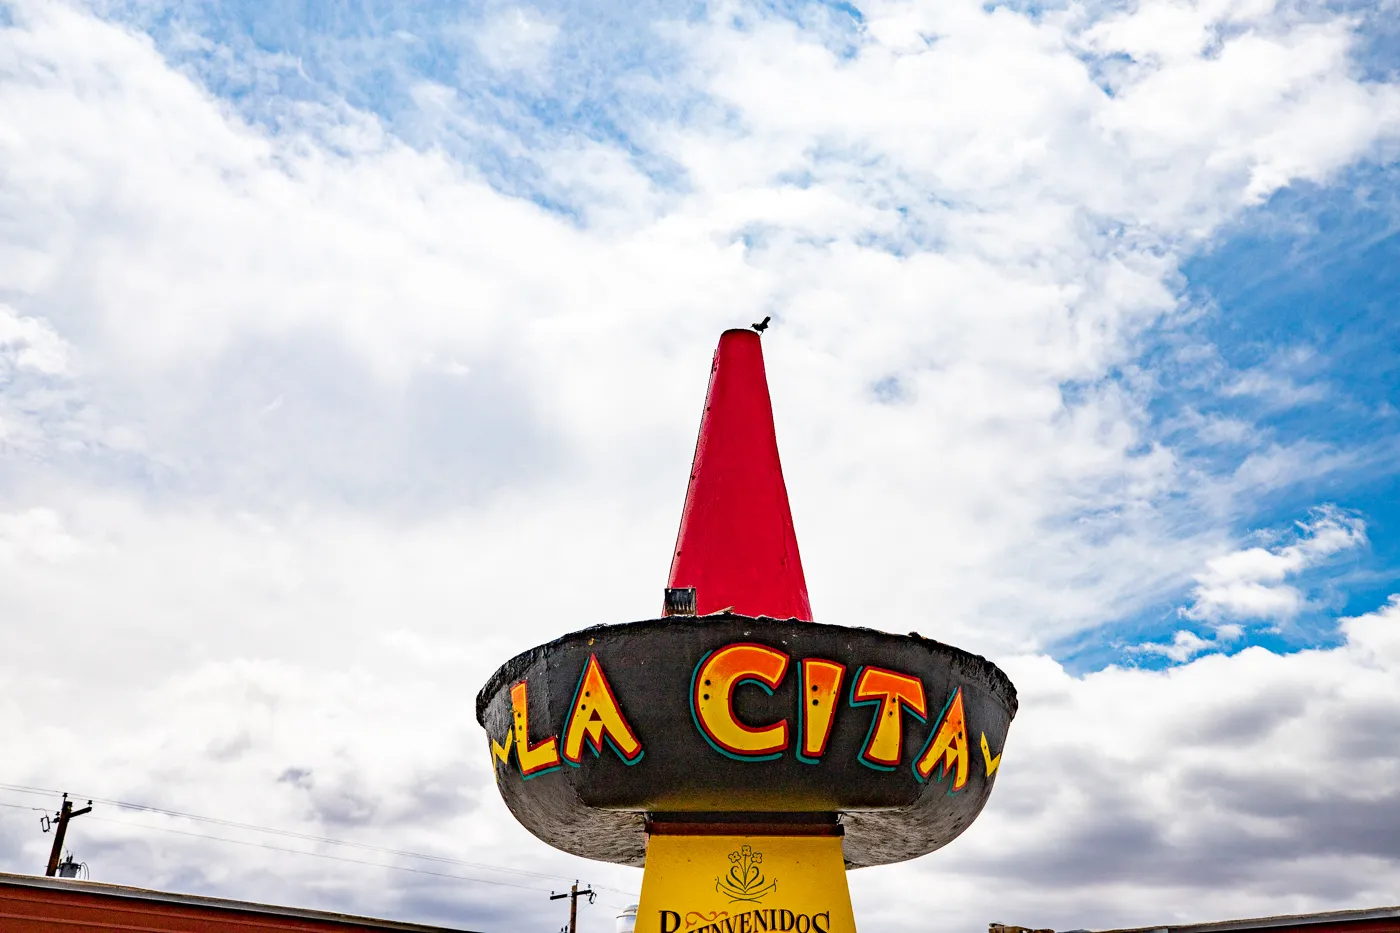 Giant Sombrero at La Cita Restaurant in Tucumcari, New Mexico - Route 66 Roadside Attraction